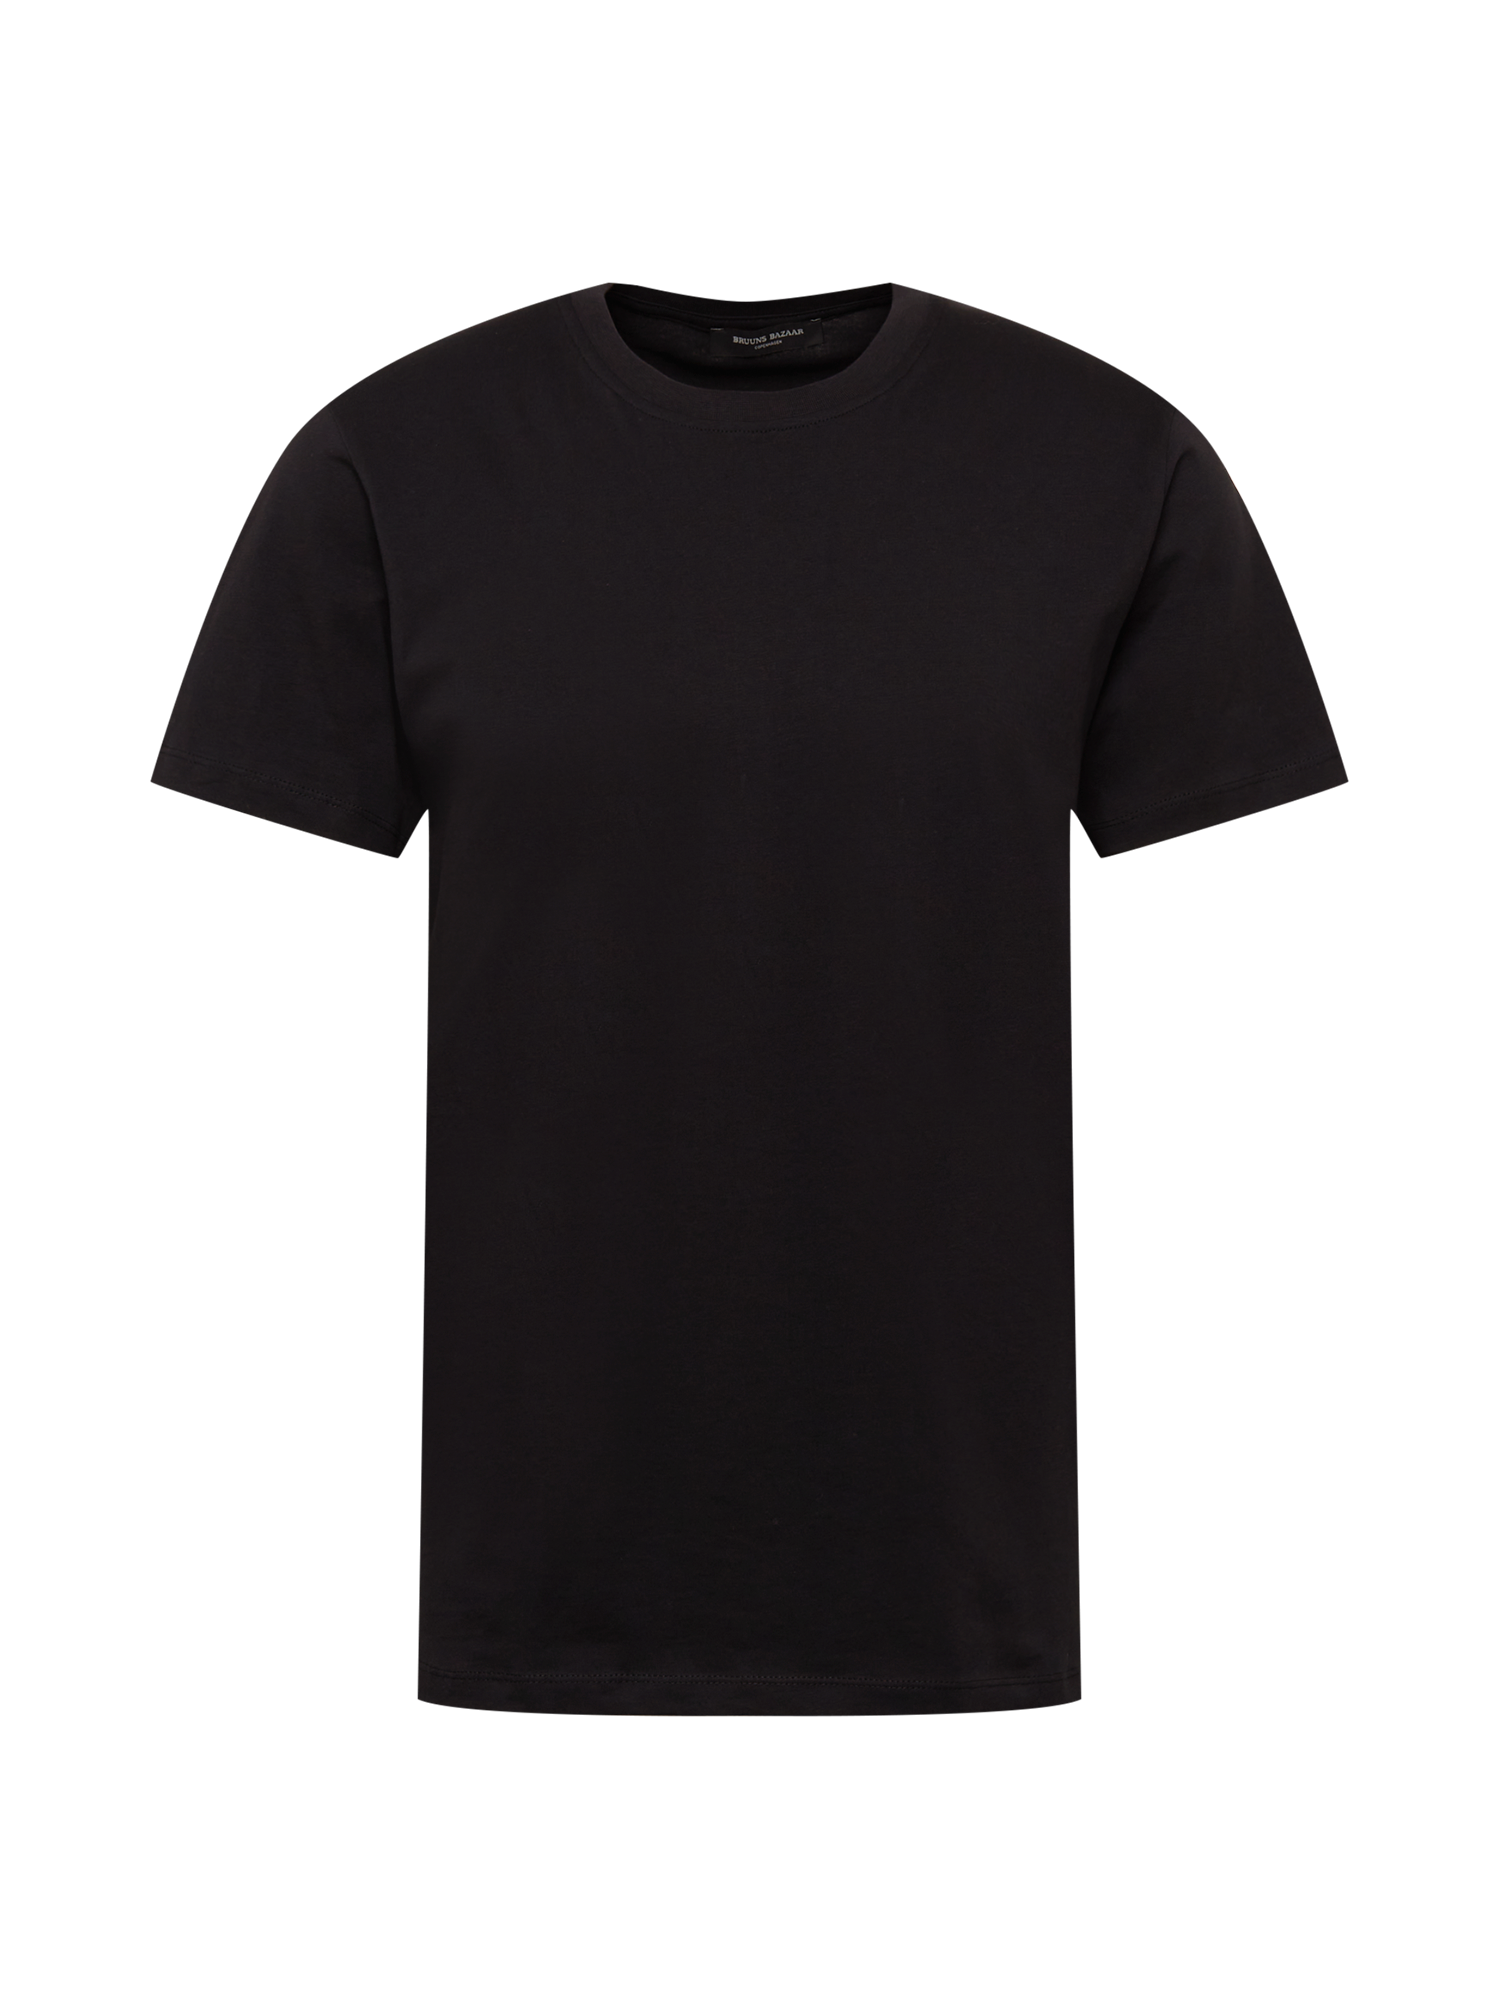 Odzież Mężczyźni BRUUNS BAZAAR Koszulka Gustav w kolorze Czarnym 